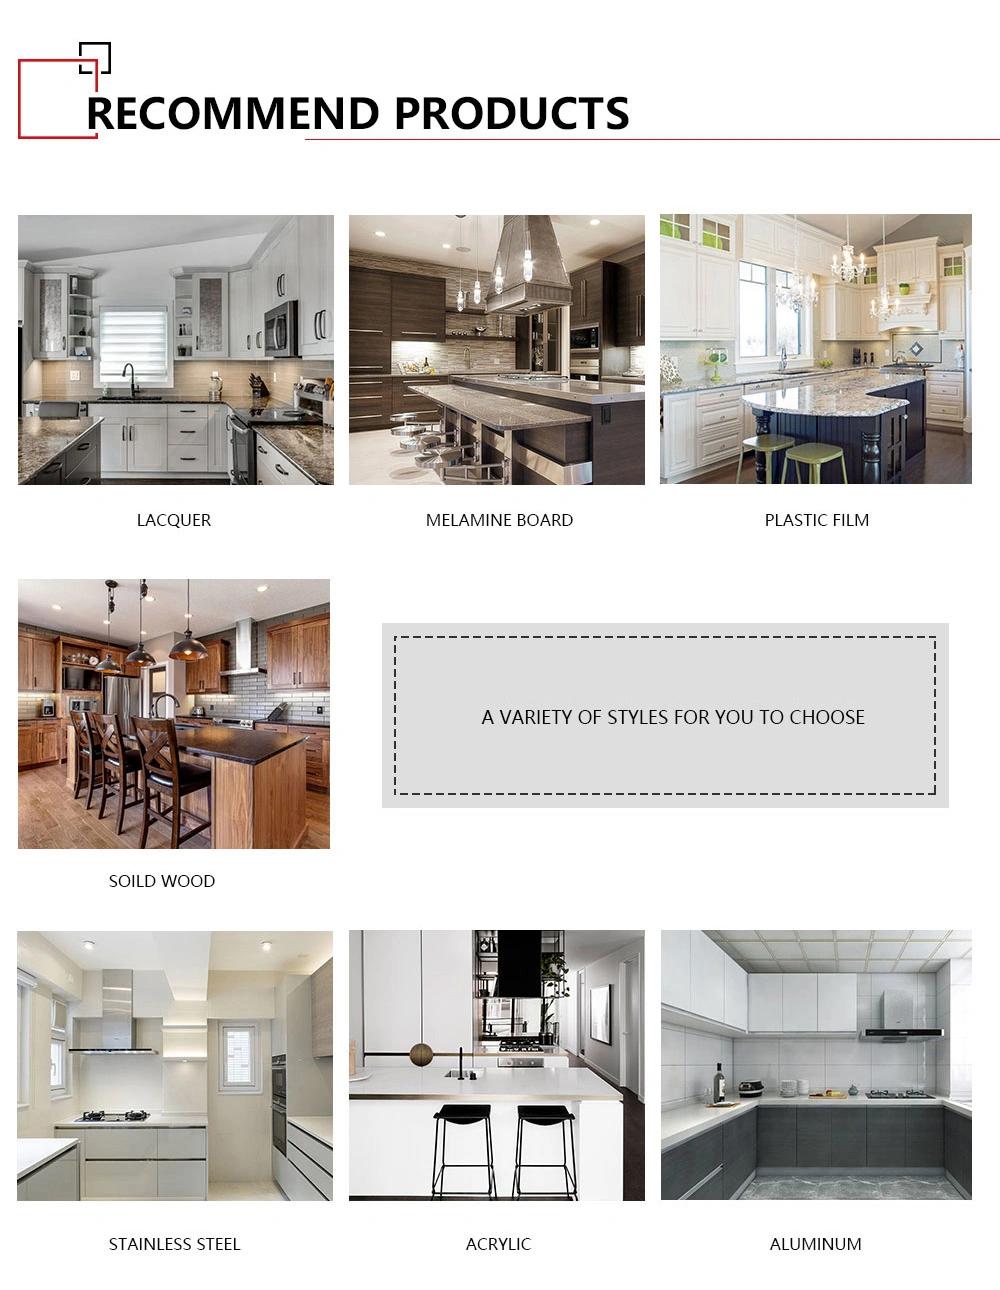 Custom Designs Dark Gray Kitchen Island Cabinet Modern